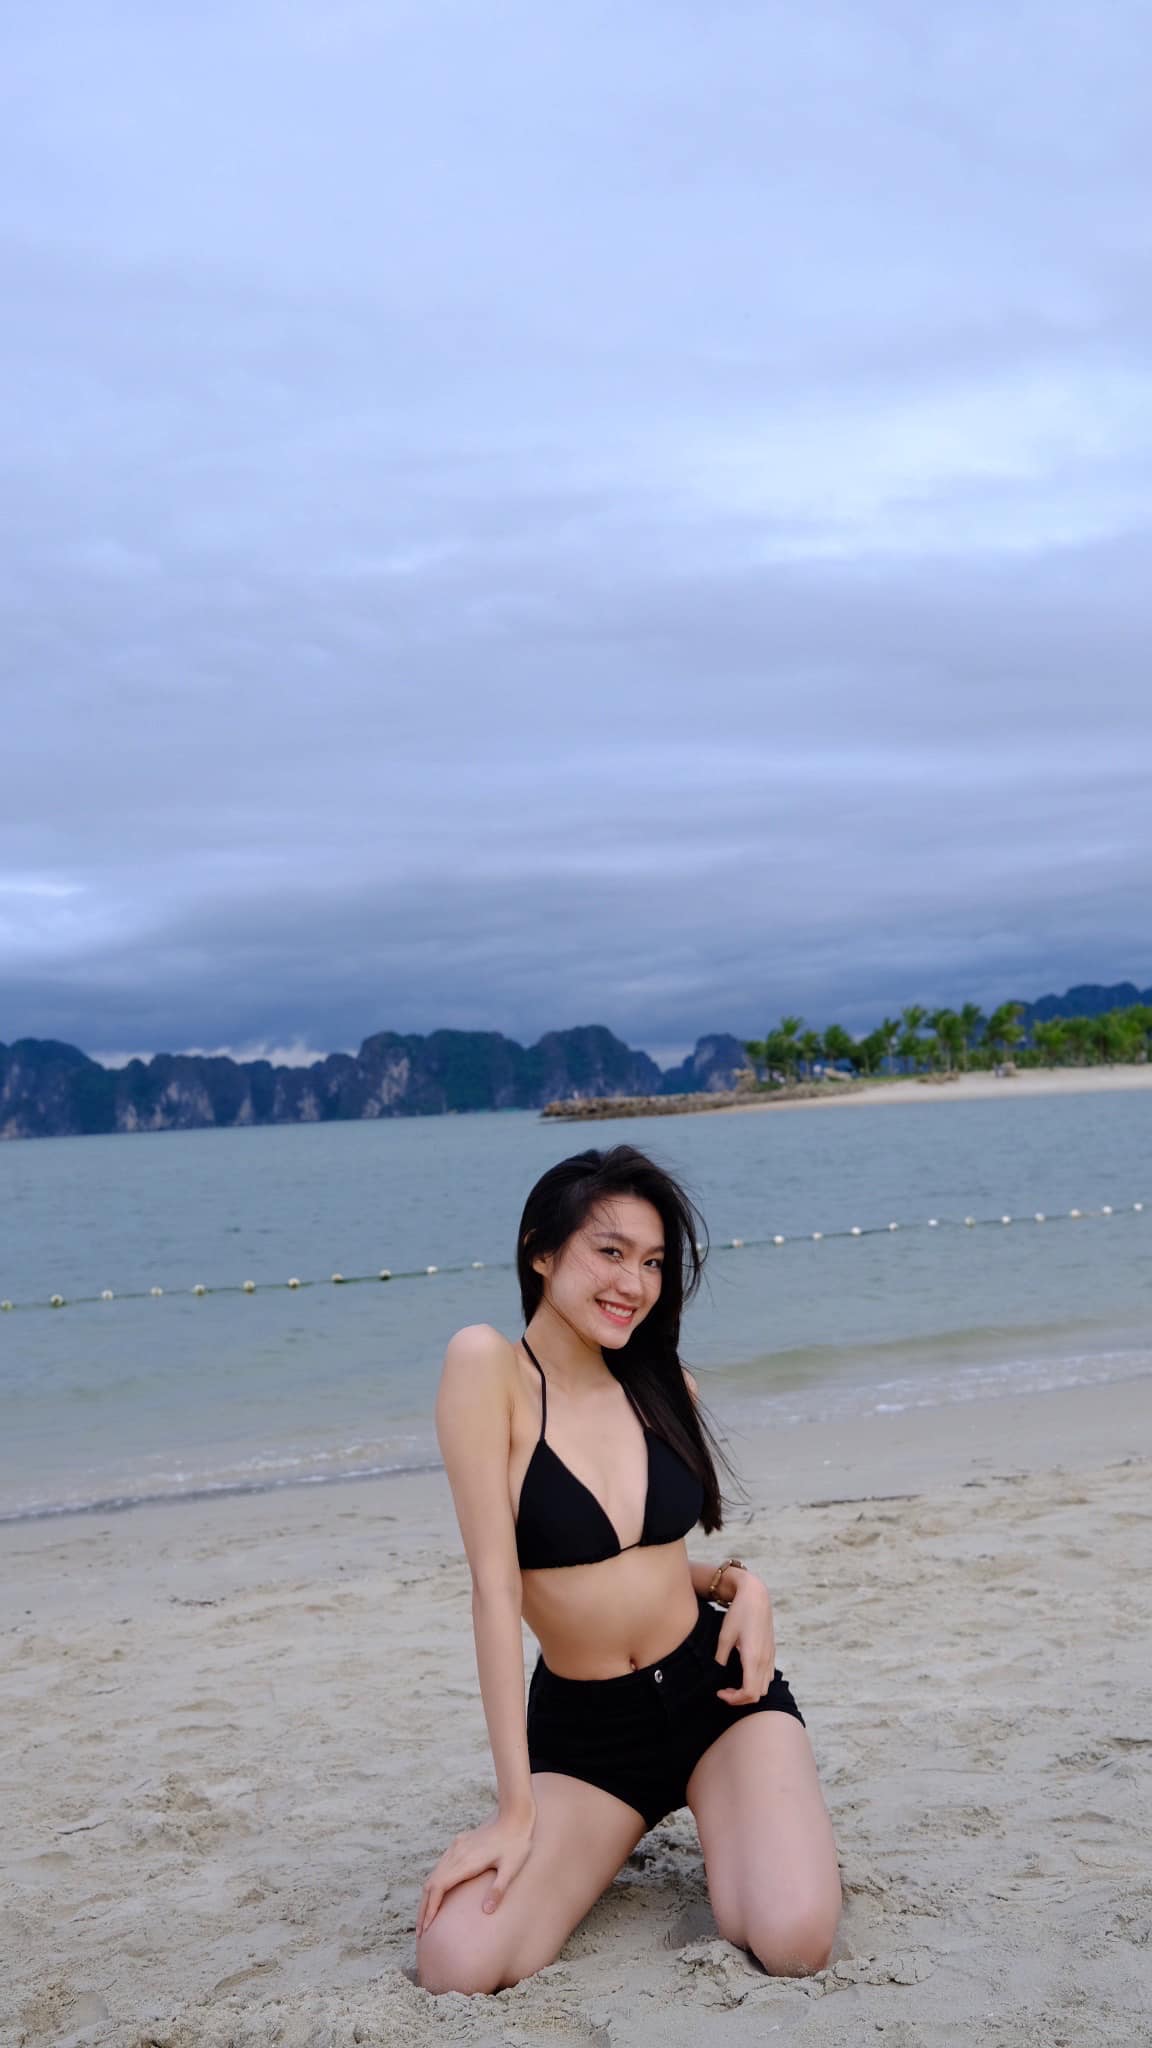 Bạn gái Đoàn Văn Hậu diện áo tắm, khoe eo 55 cm trên bãi biển - Ảnh 2